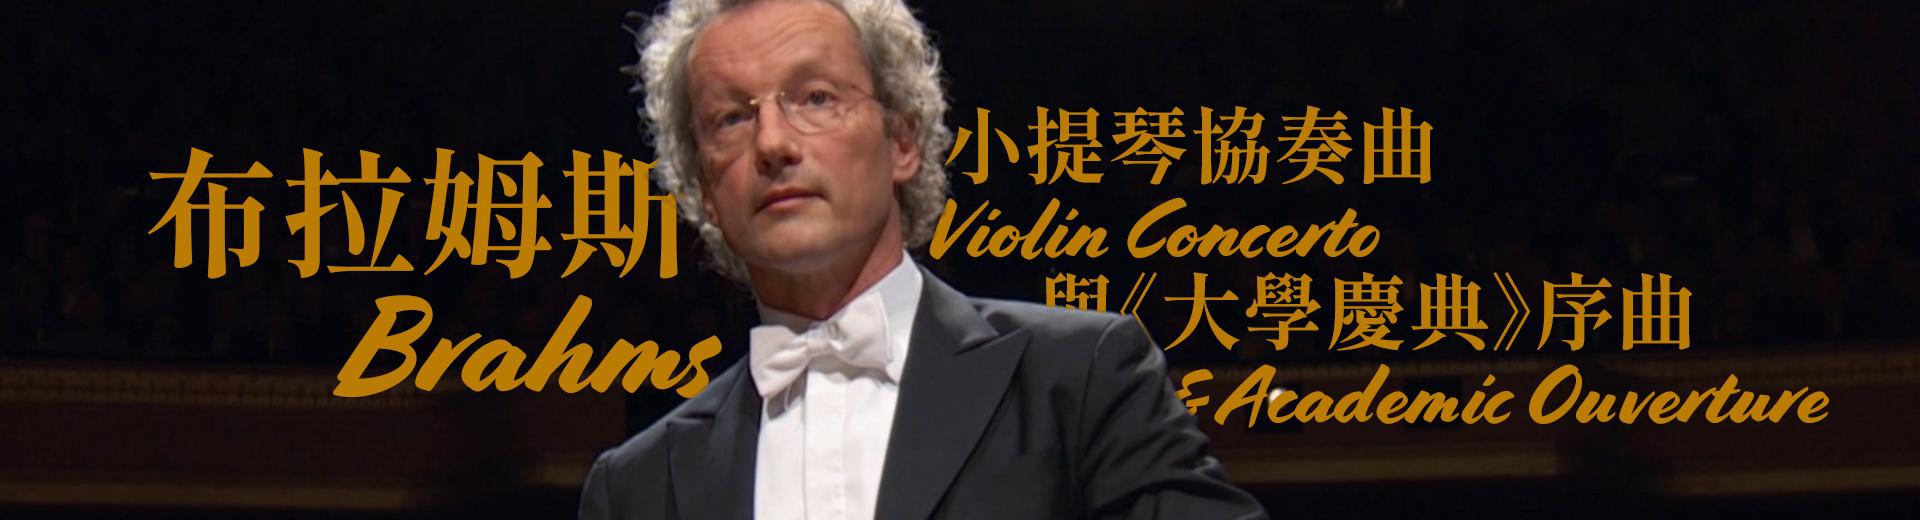 布拉姆斯：小提琴協奏曲與《大學慶典》序曲 Brahms - Violin Concerto & Academic Ouverture